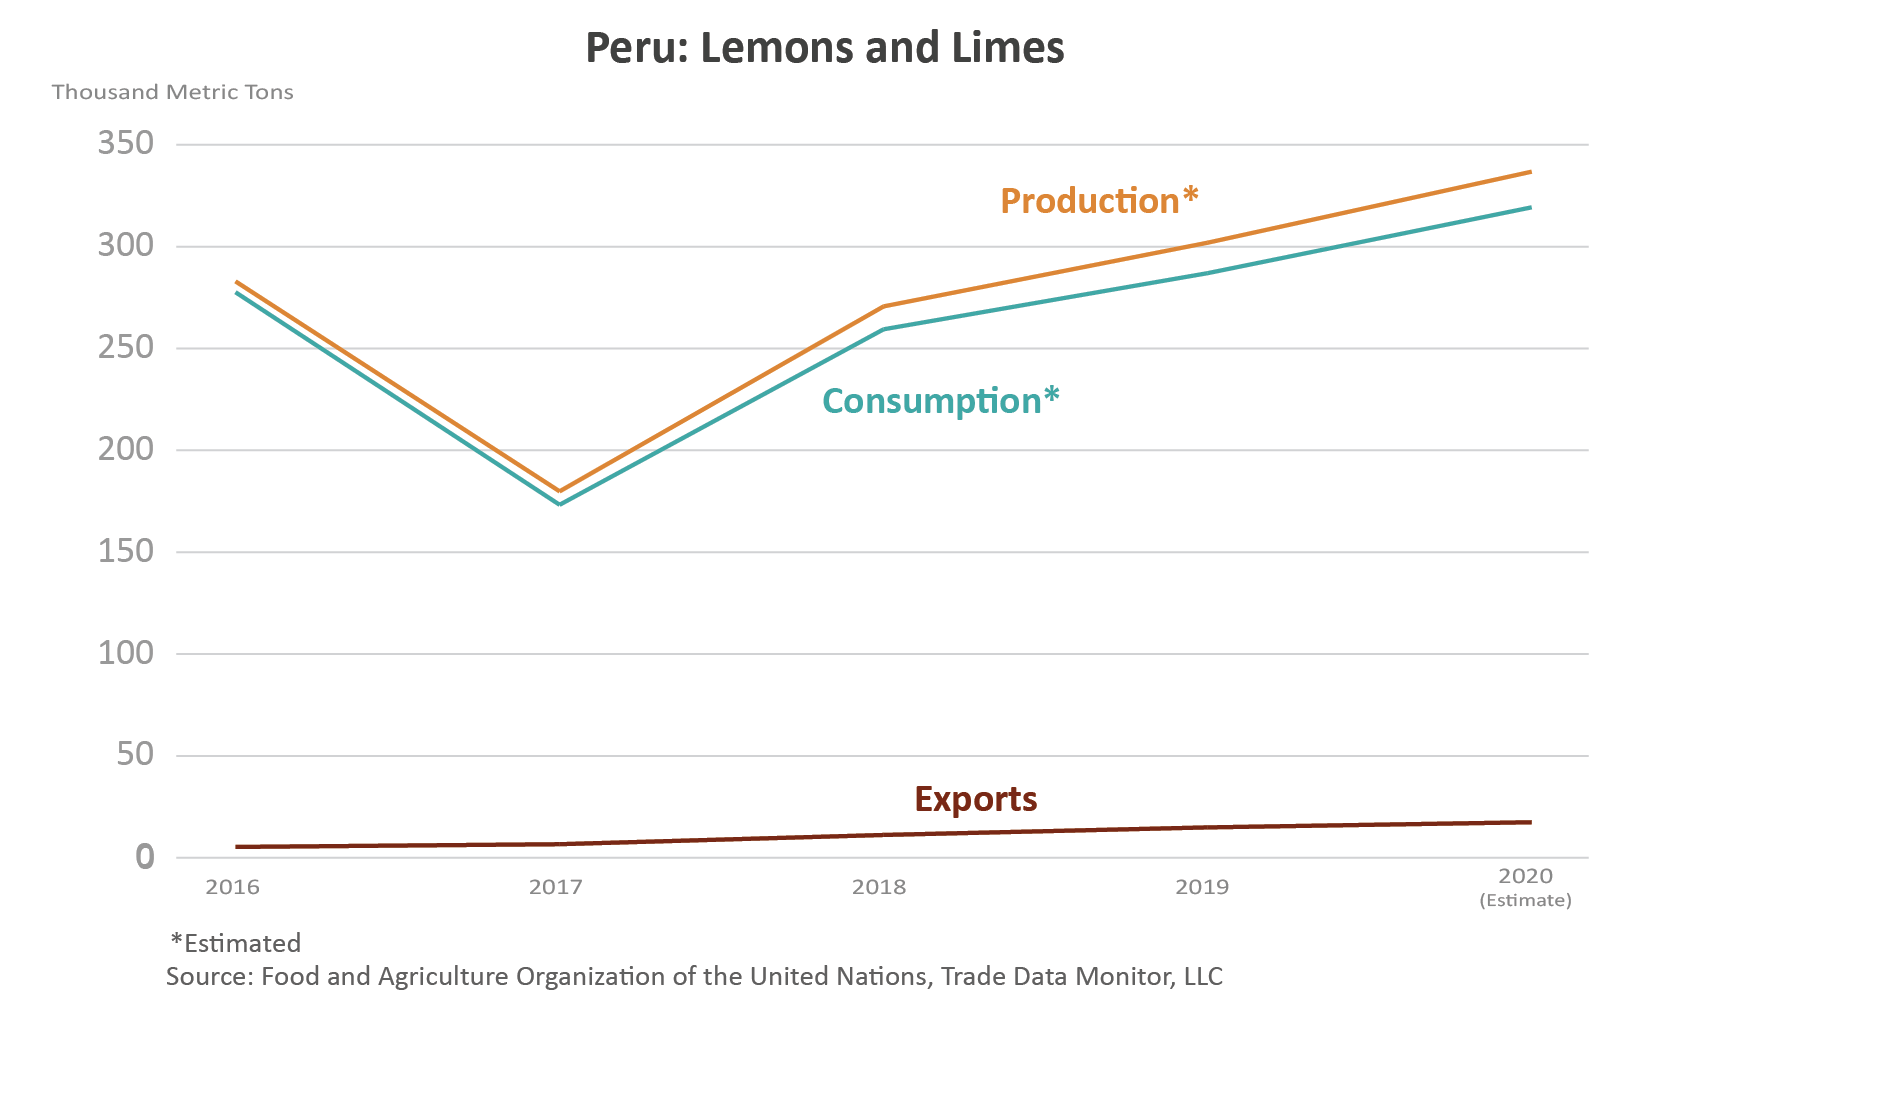 Gráfico de líneas que muestra el volumen de producción, consumo y exportaciones de limones y limas de Perú.